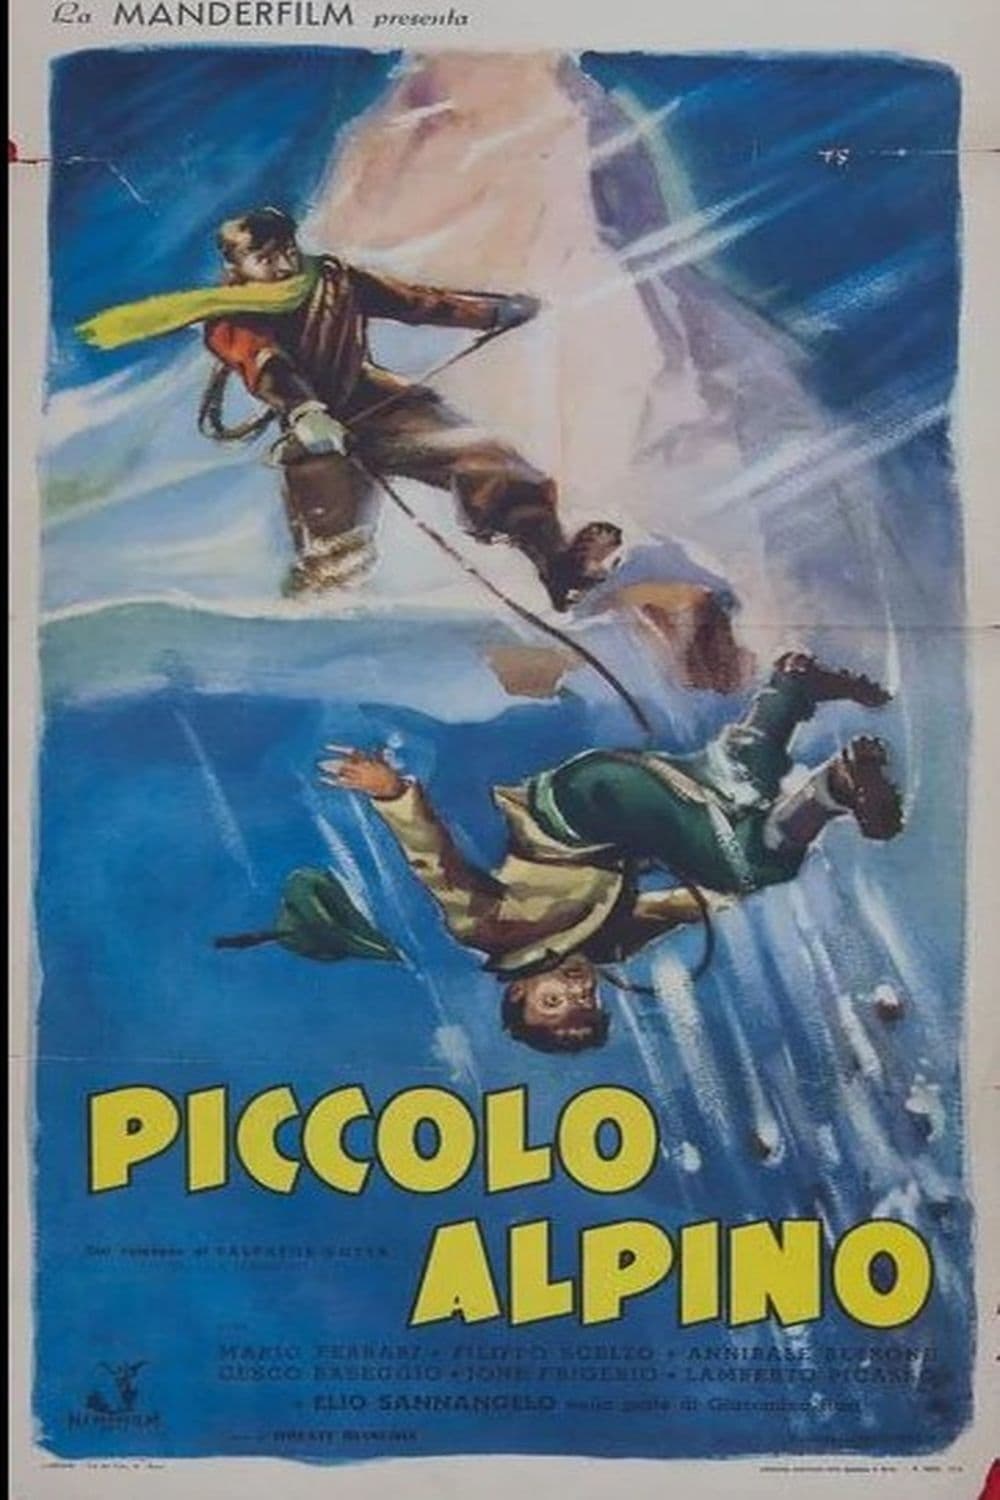 Piccolo alpino (1940)